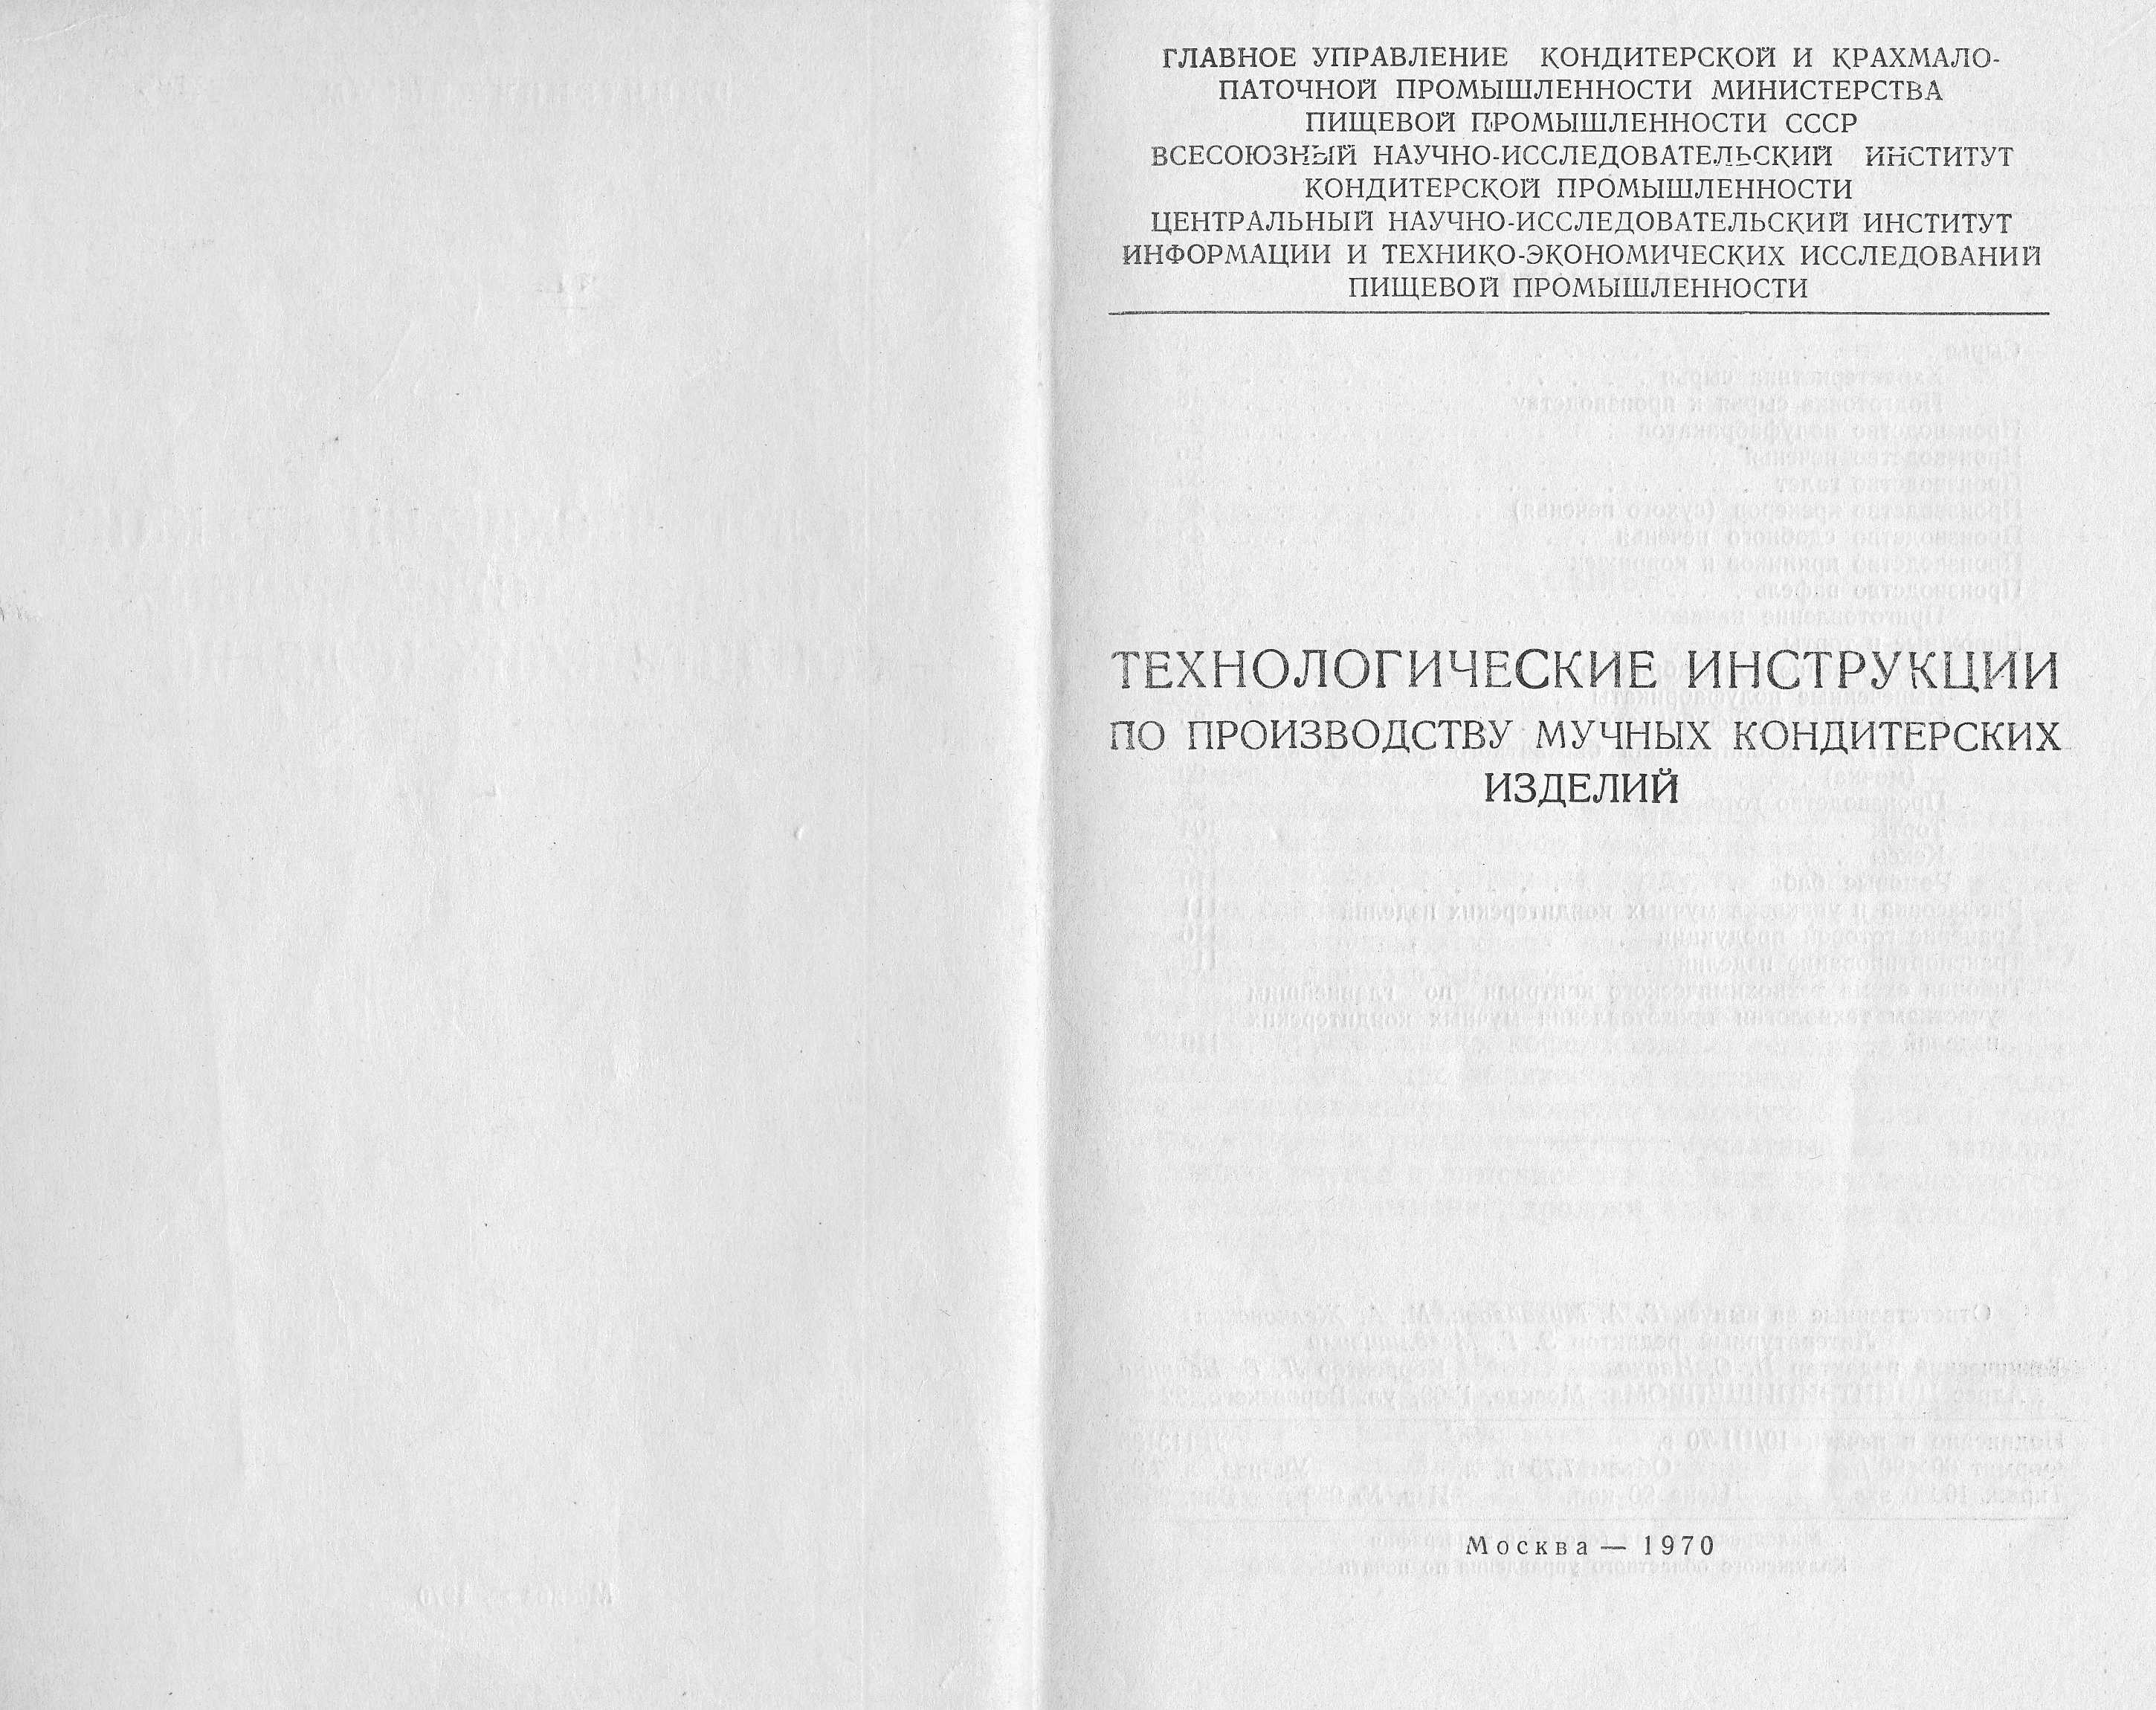 Розробка нормативної документації з виробництва борошняних кондитерських виробів 1968 г. сторінка 1